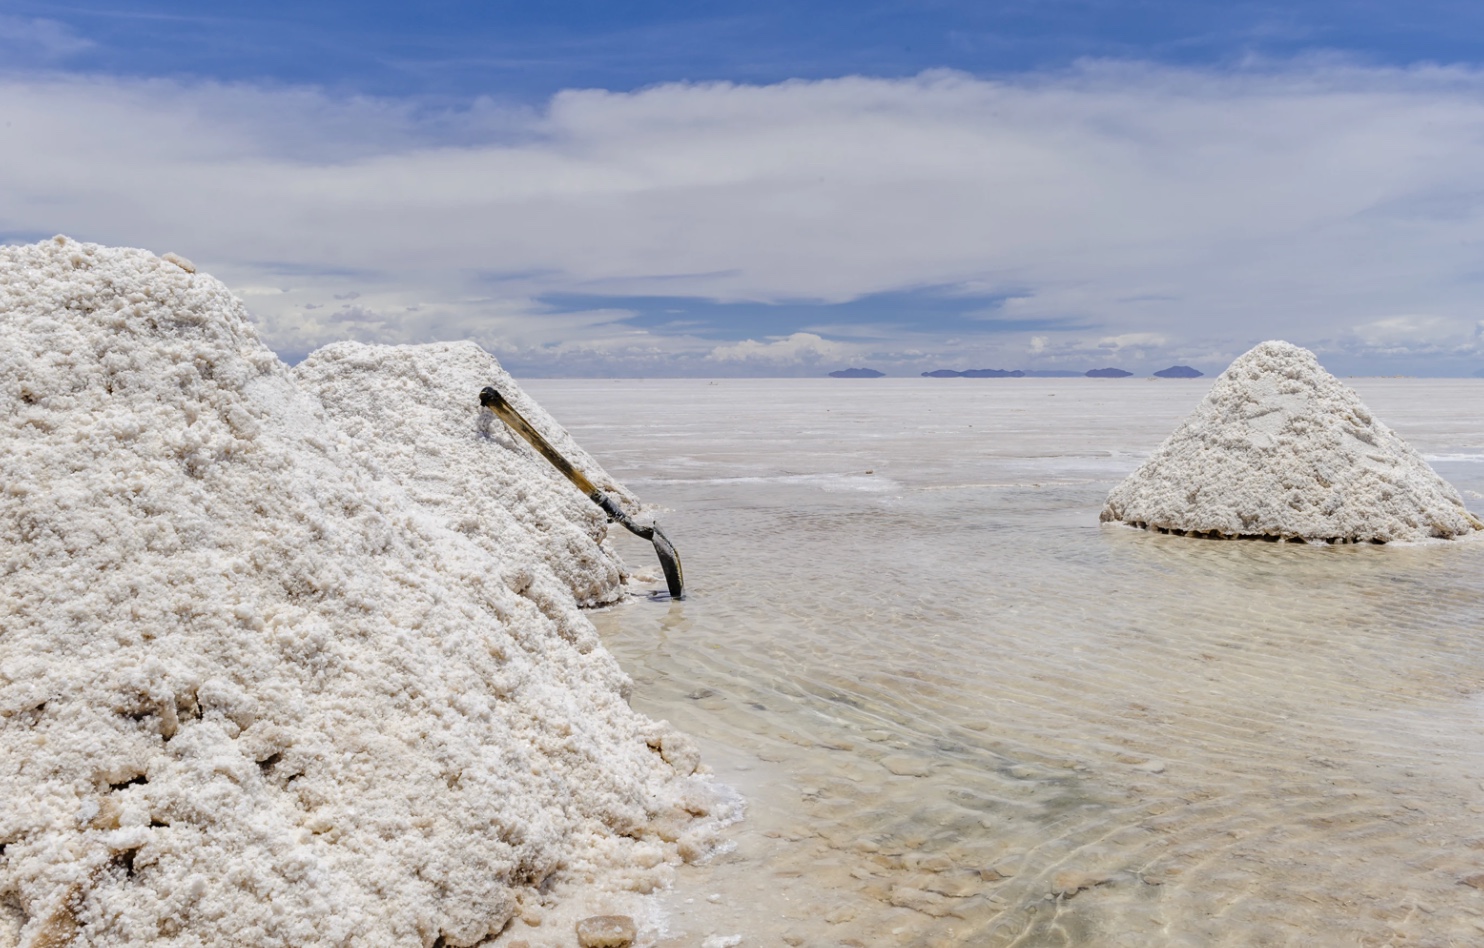 国内锂盐企业的盈利程度将在四季度呈现鲜亮分化